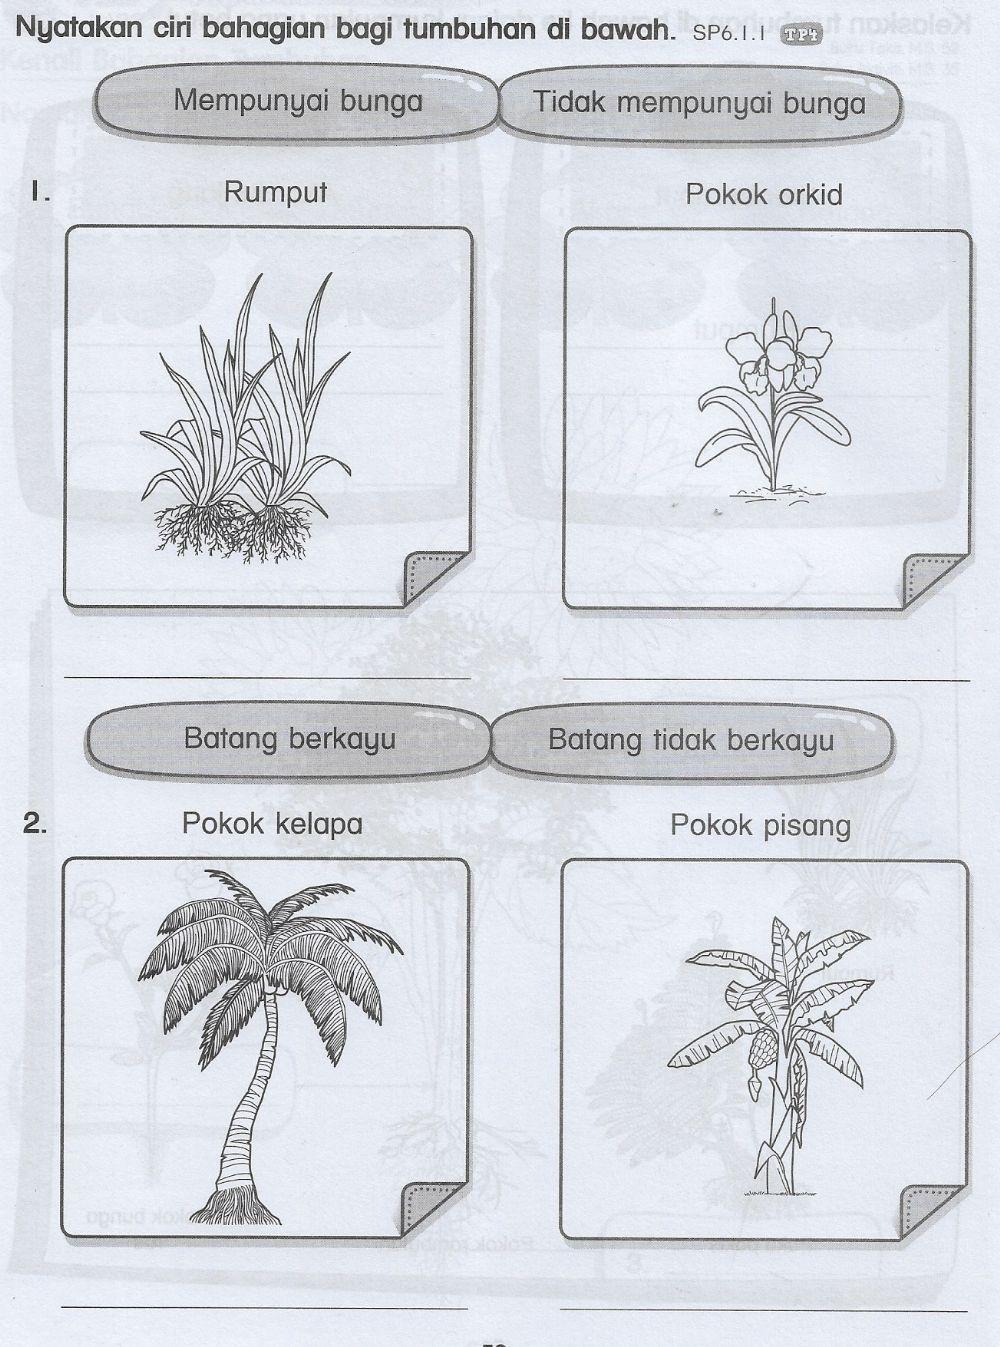 Bahagian tumbuhan